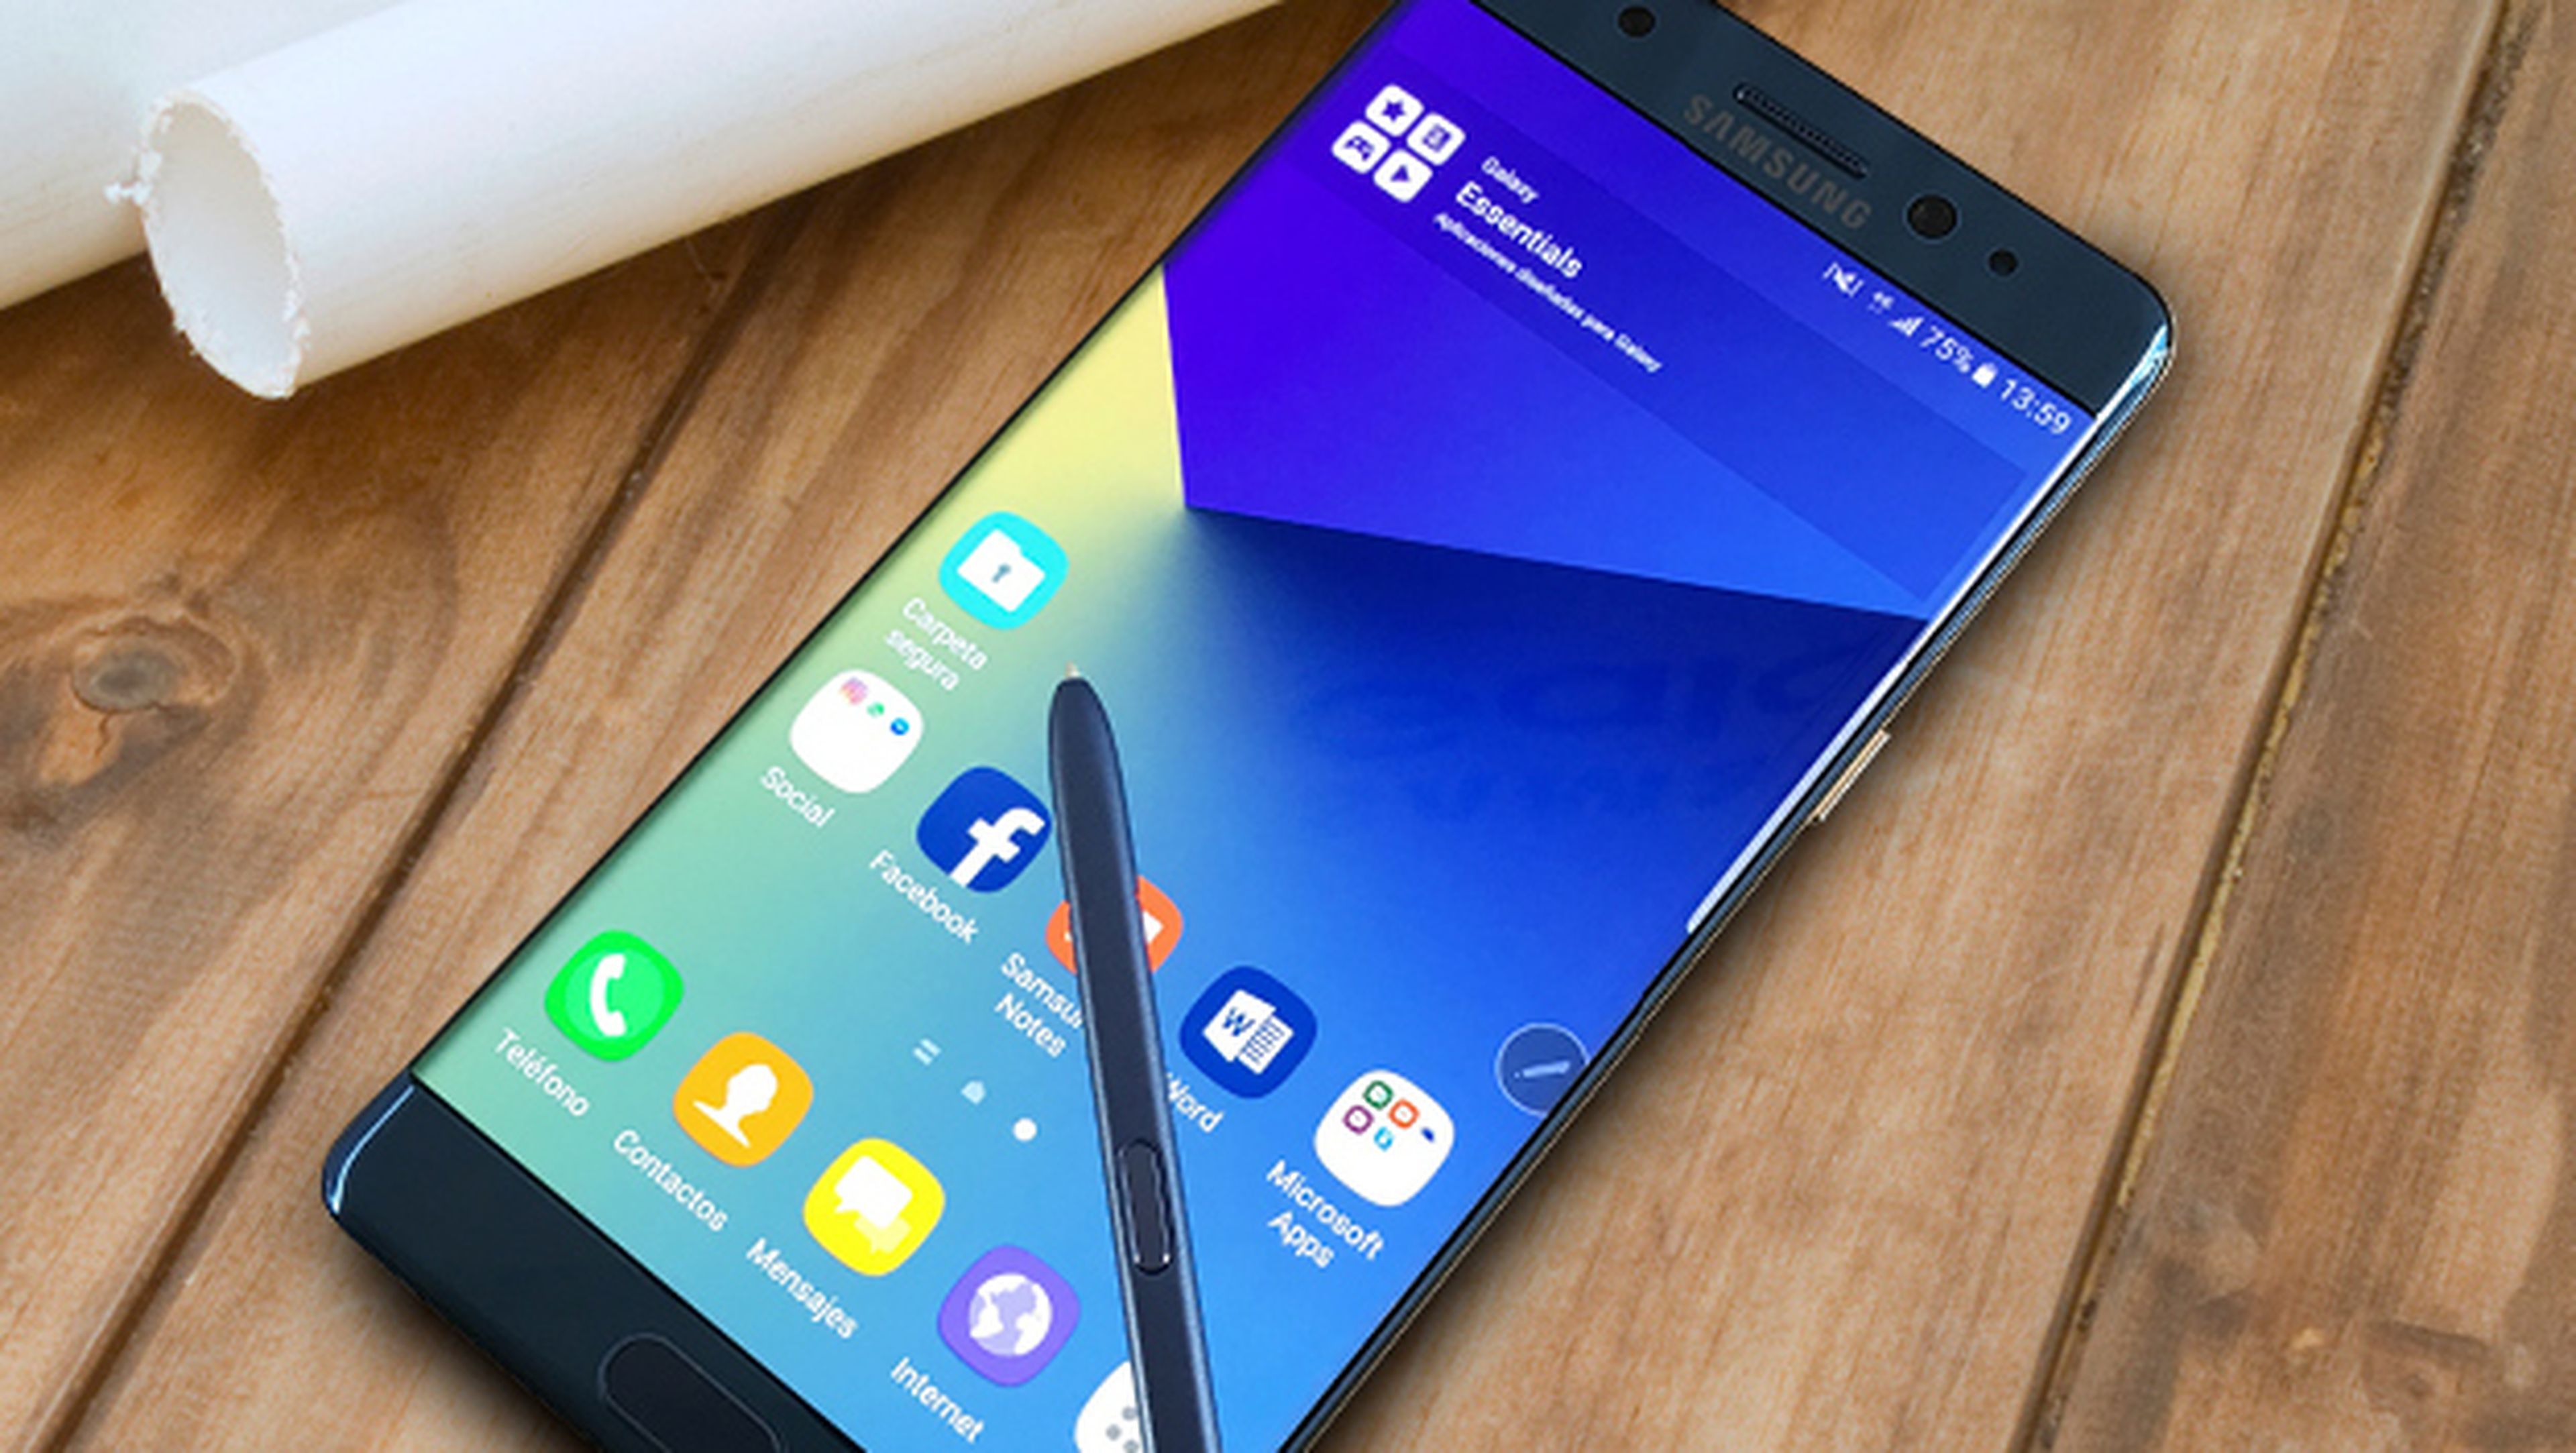 Samsung retrasa la distribución del Galaxy Note 7 por fallos